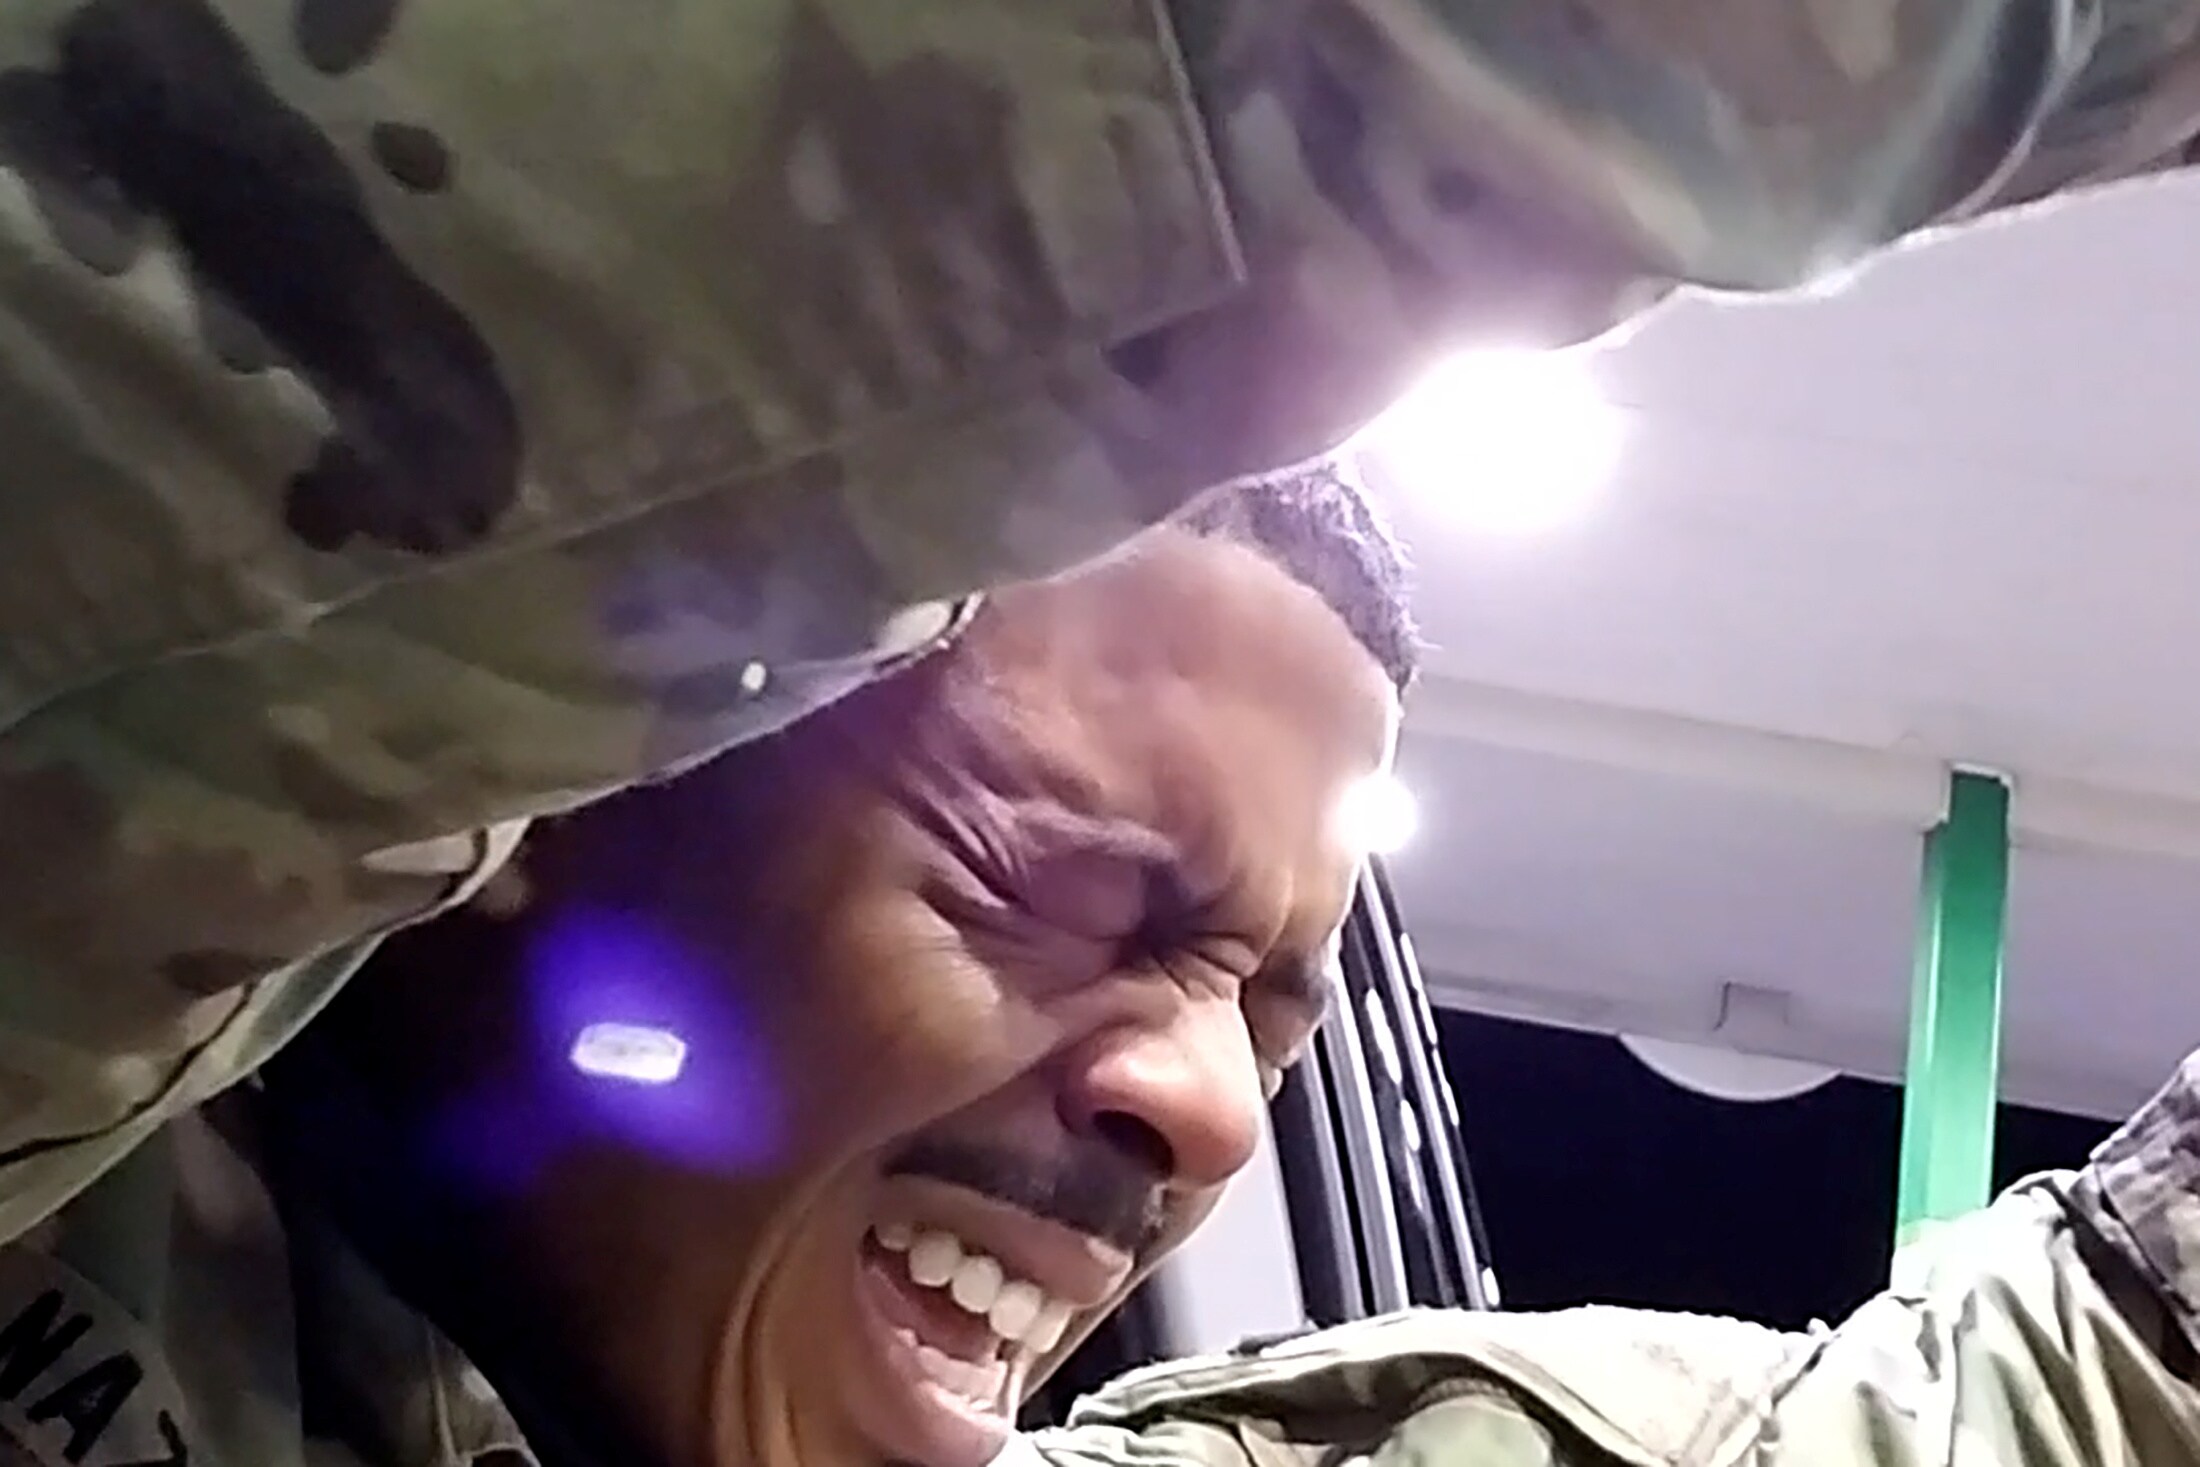 ▶ Amerikaanse politieagent ontslagen nadat hij militair onder schot houdt en hem met pepperspray uitschakelt